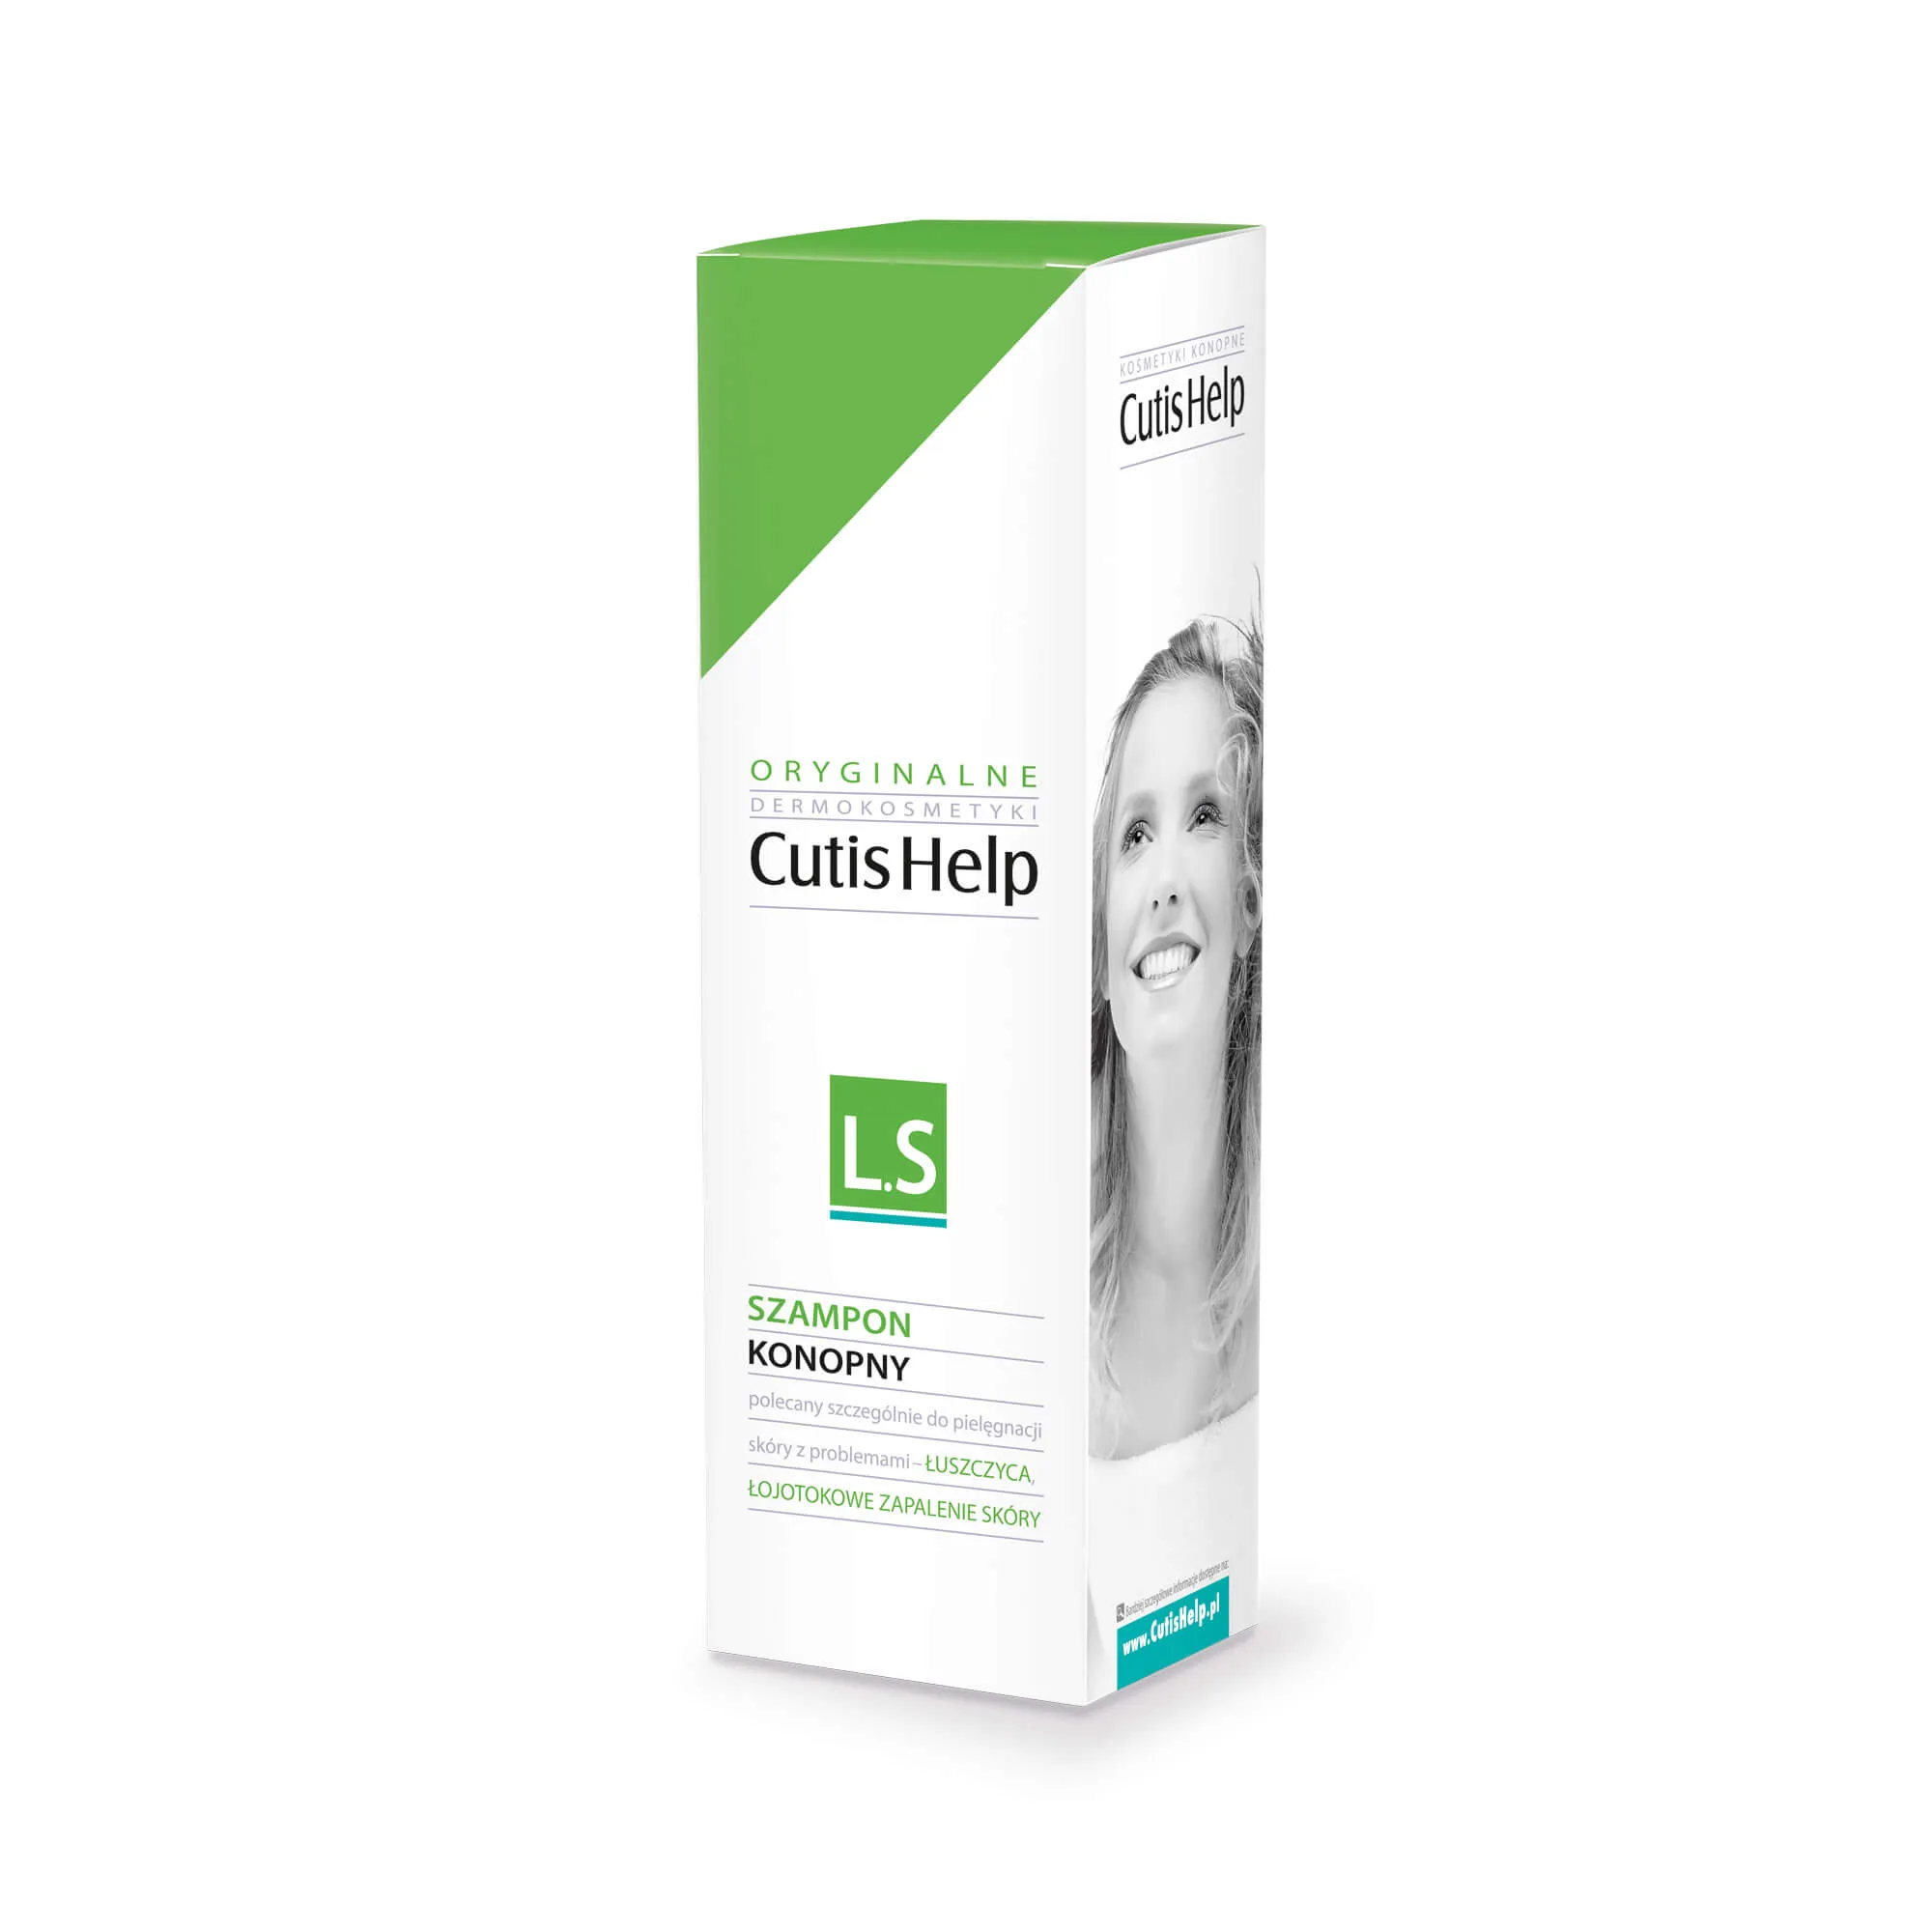 Cutishelp Activ-Squa, szampon konopny do mycia i pielęgnacji skóry z objawami łuszczycy, 200 ml